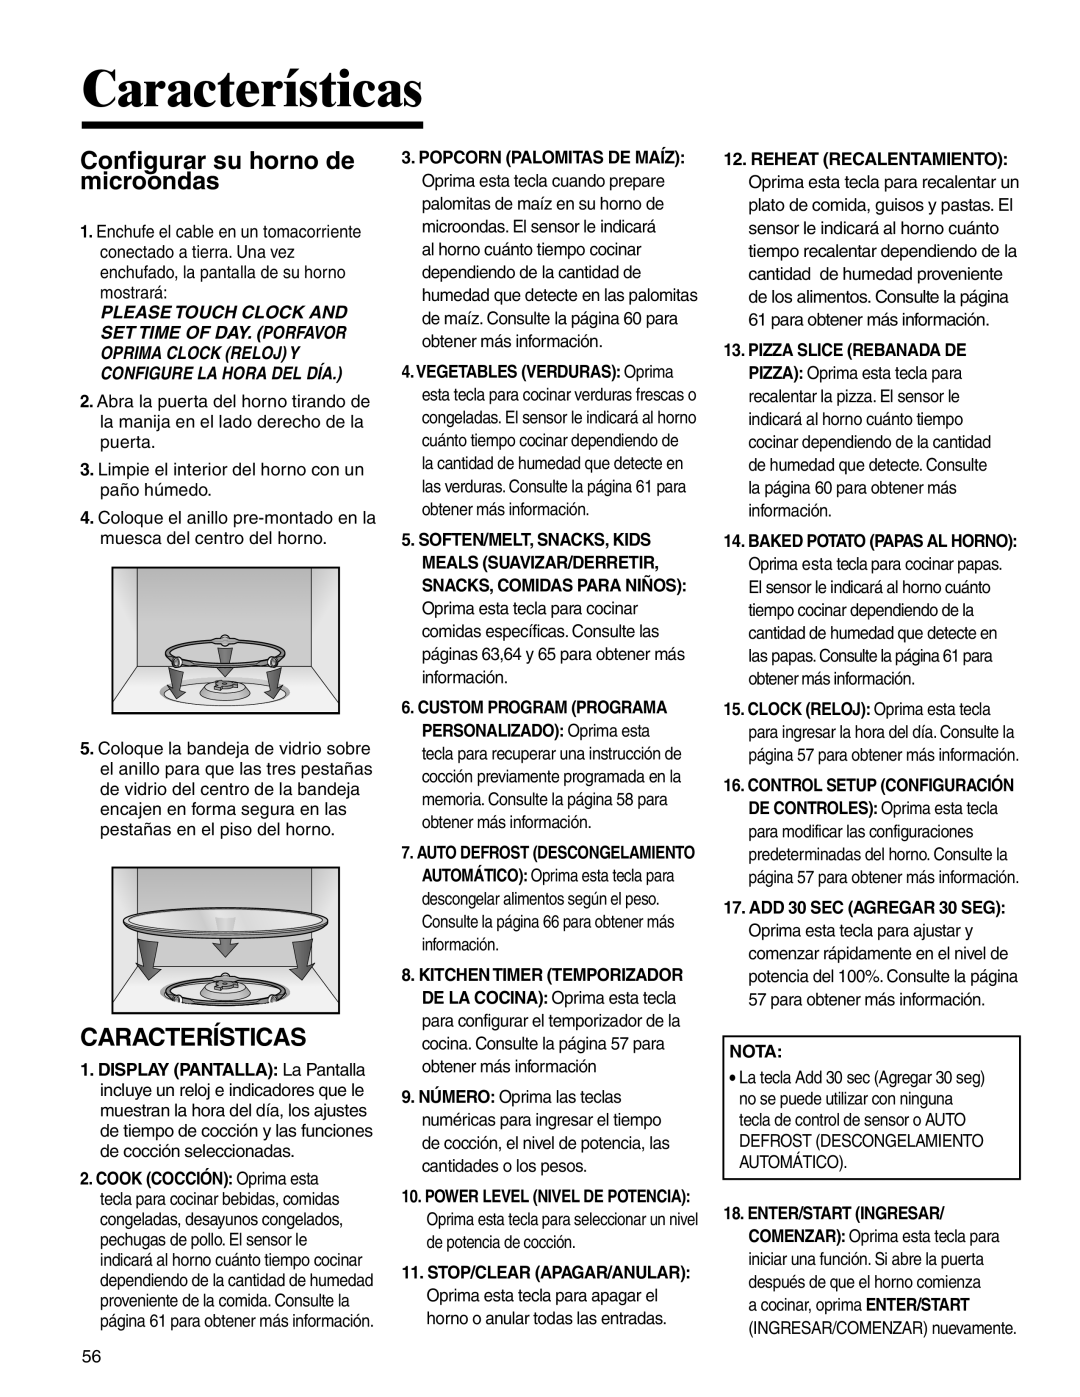 Amana AMC2206BA important safety instructions Configurar su horno de microondas, Características 